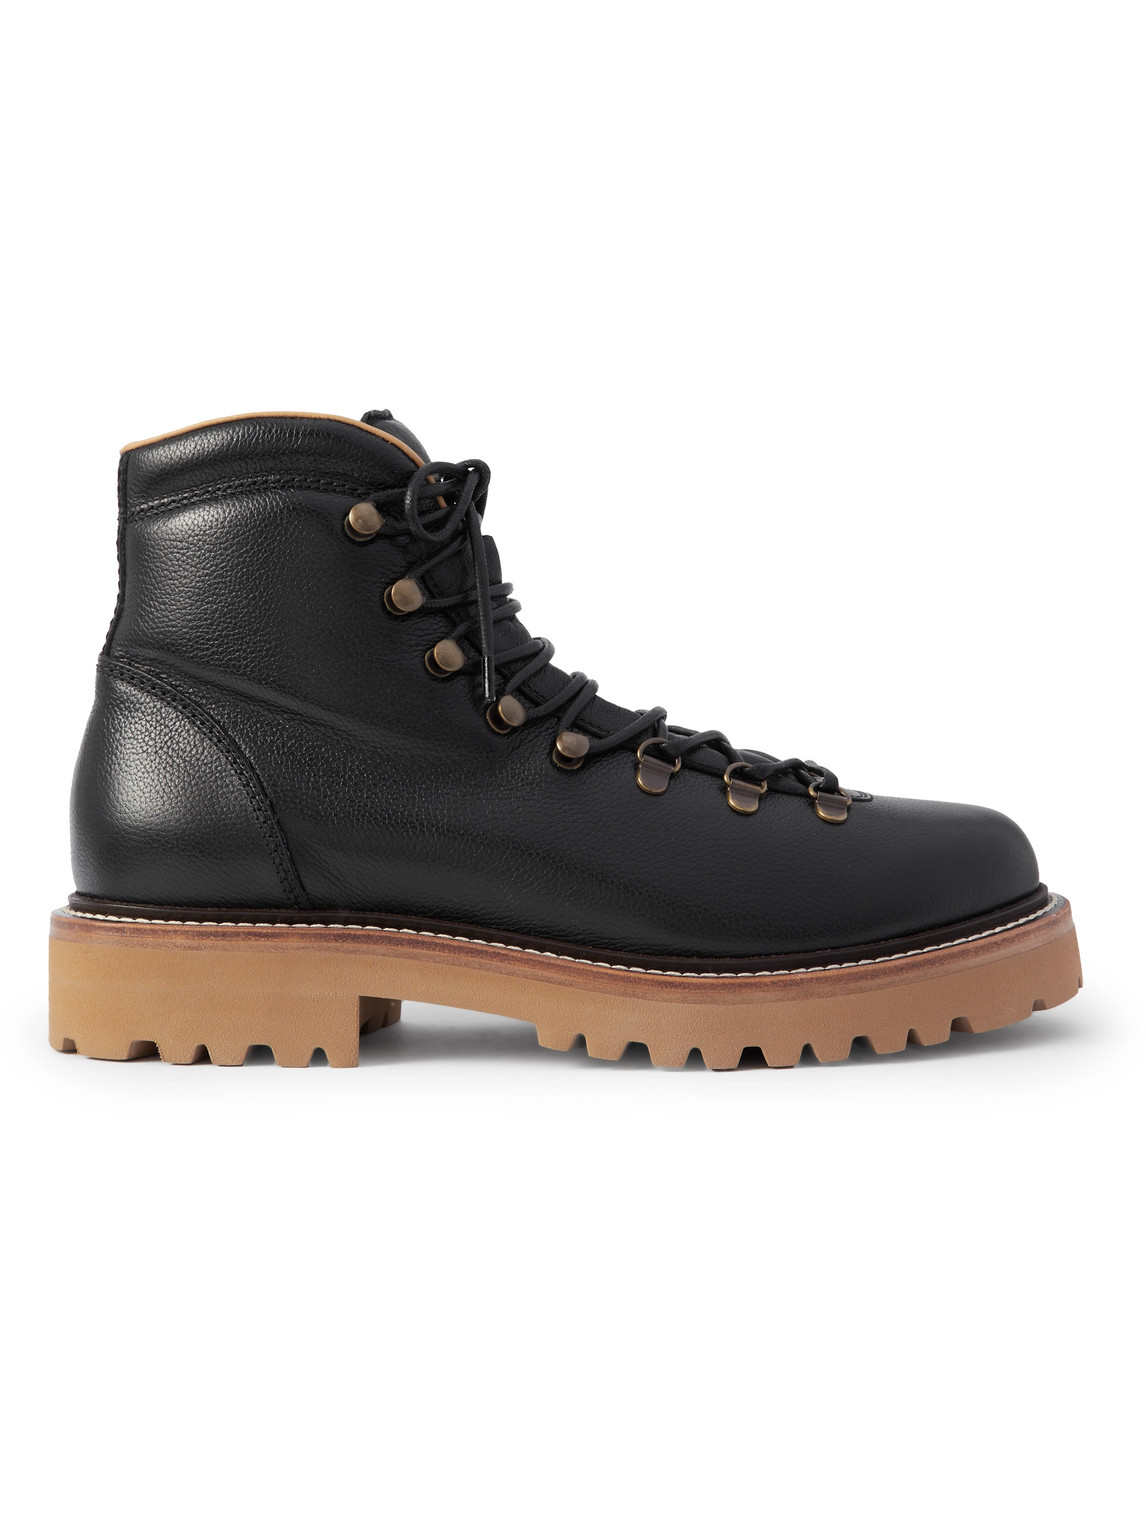 Brunello Cucinelli - Leather Hiking Boots - Men - Black - EU 44.5 von Brunello Cucinelli